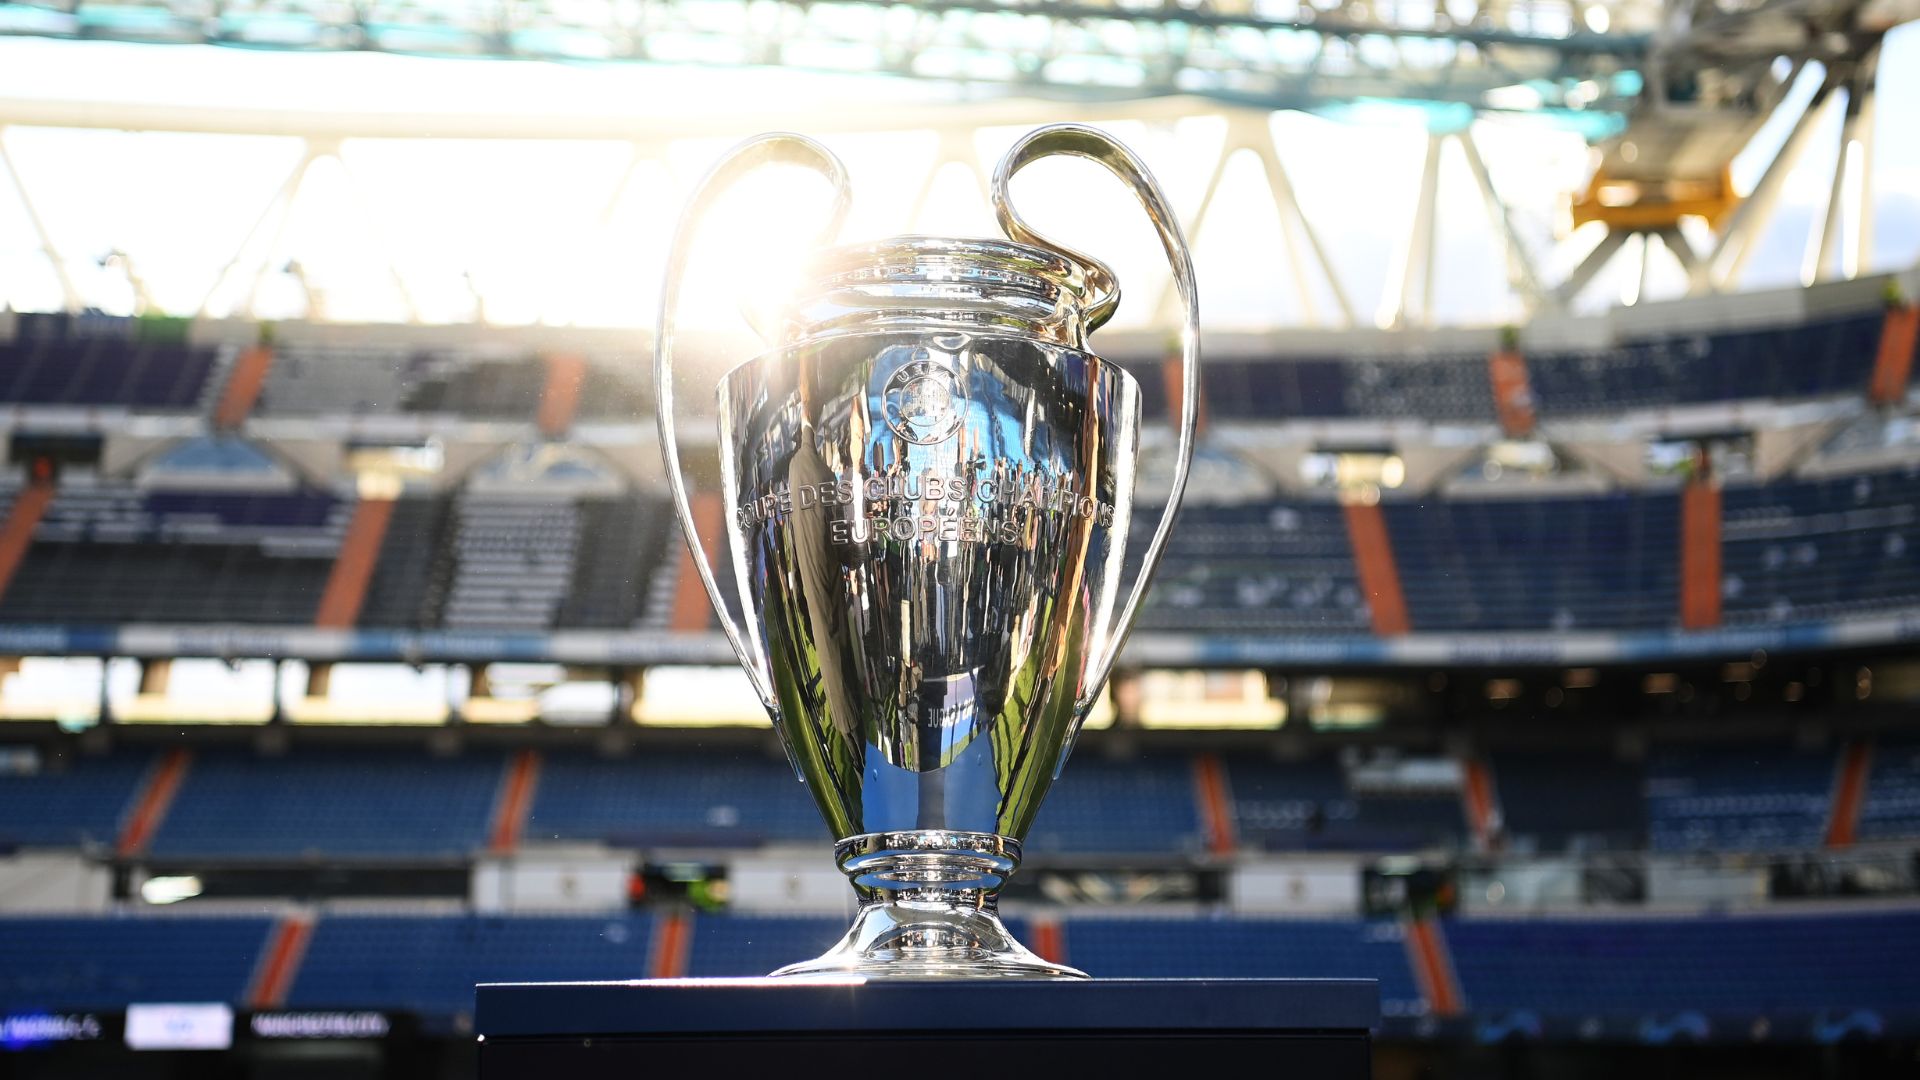 TNT Sports transmite sorteio da fase de grupos da Champions League